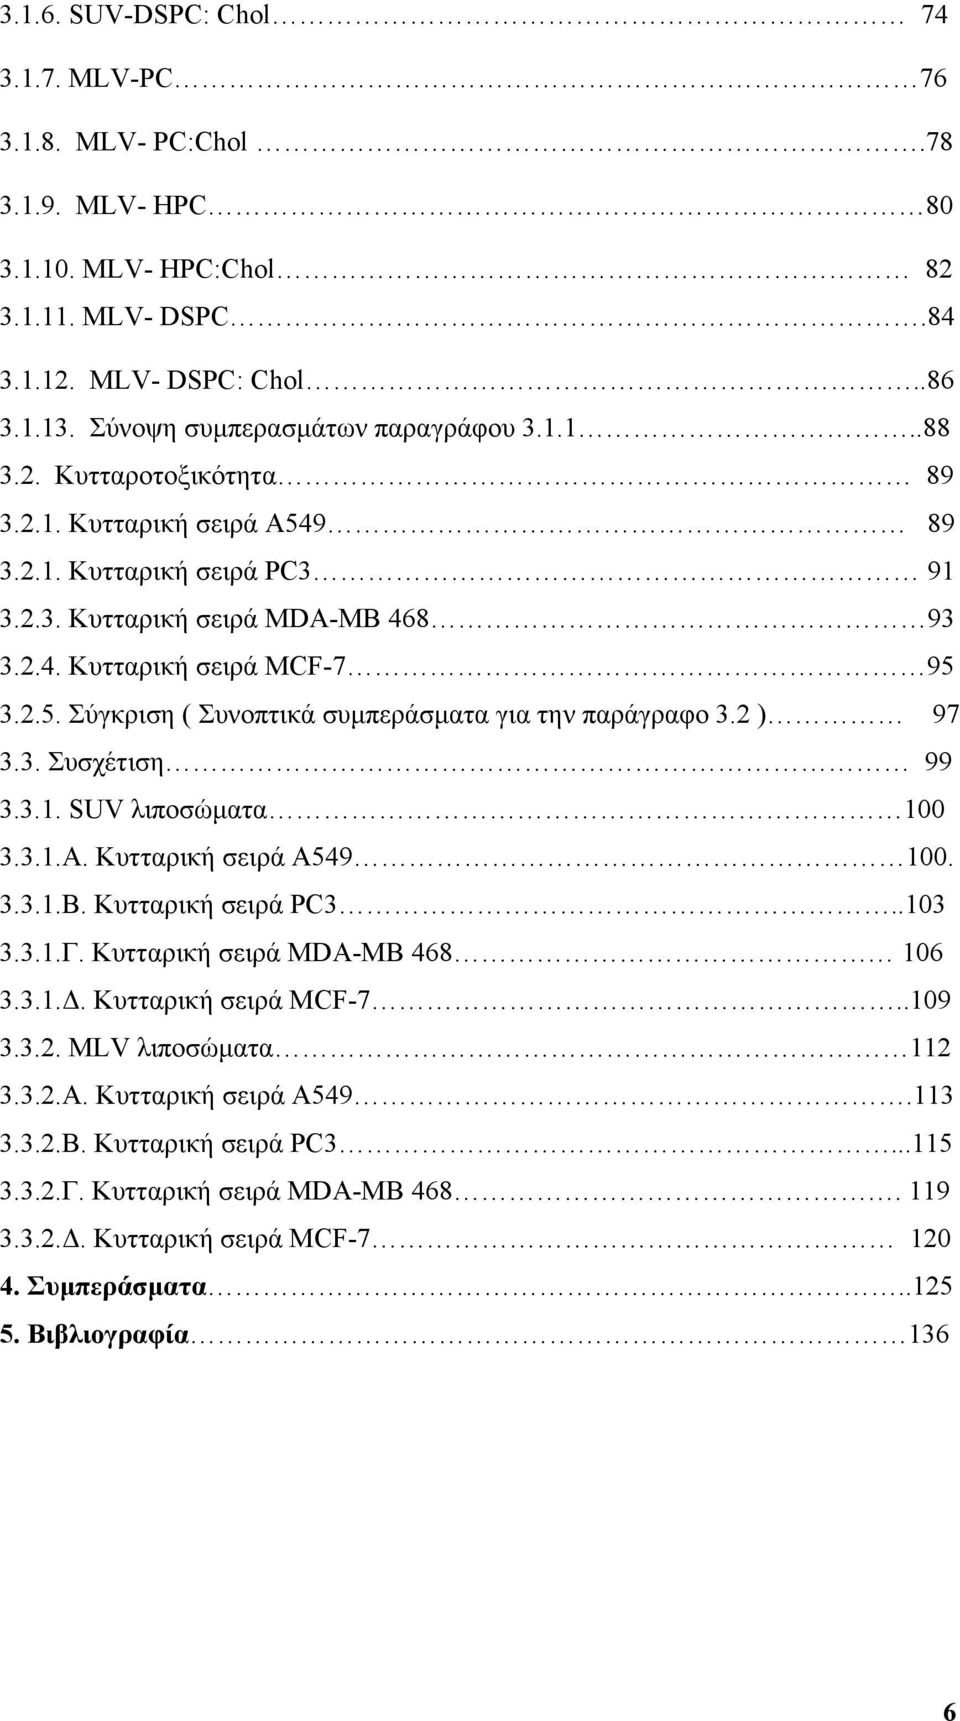 2 ) 97 3.3. Συσχέτιση 99 3.3.1. SUV λιποσώματα 1 3.3.1.Α. Κυτταρική σειρά Α549 1. 3.3.1.Β. Κυτταρική σειρά PC3..13 3.3.1.Γ. Κυτταρική σειρά MDA-MB 468 16 3.3.1.Δ. Κυτταρική σειρά MCF-7..19 3.3.2. MLV λιποσώματα 112 3.